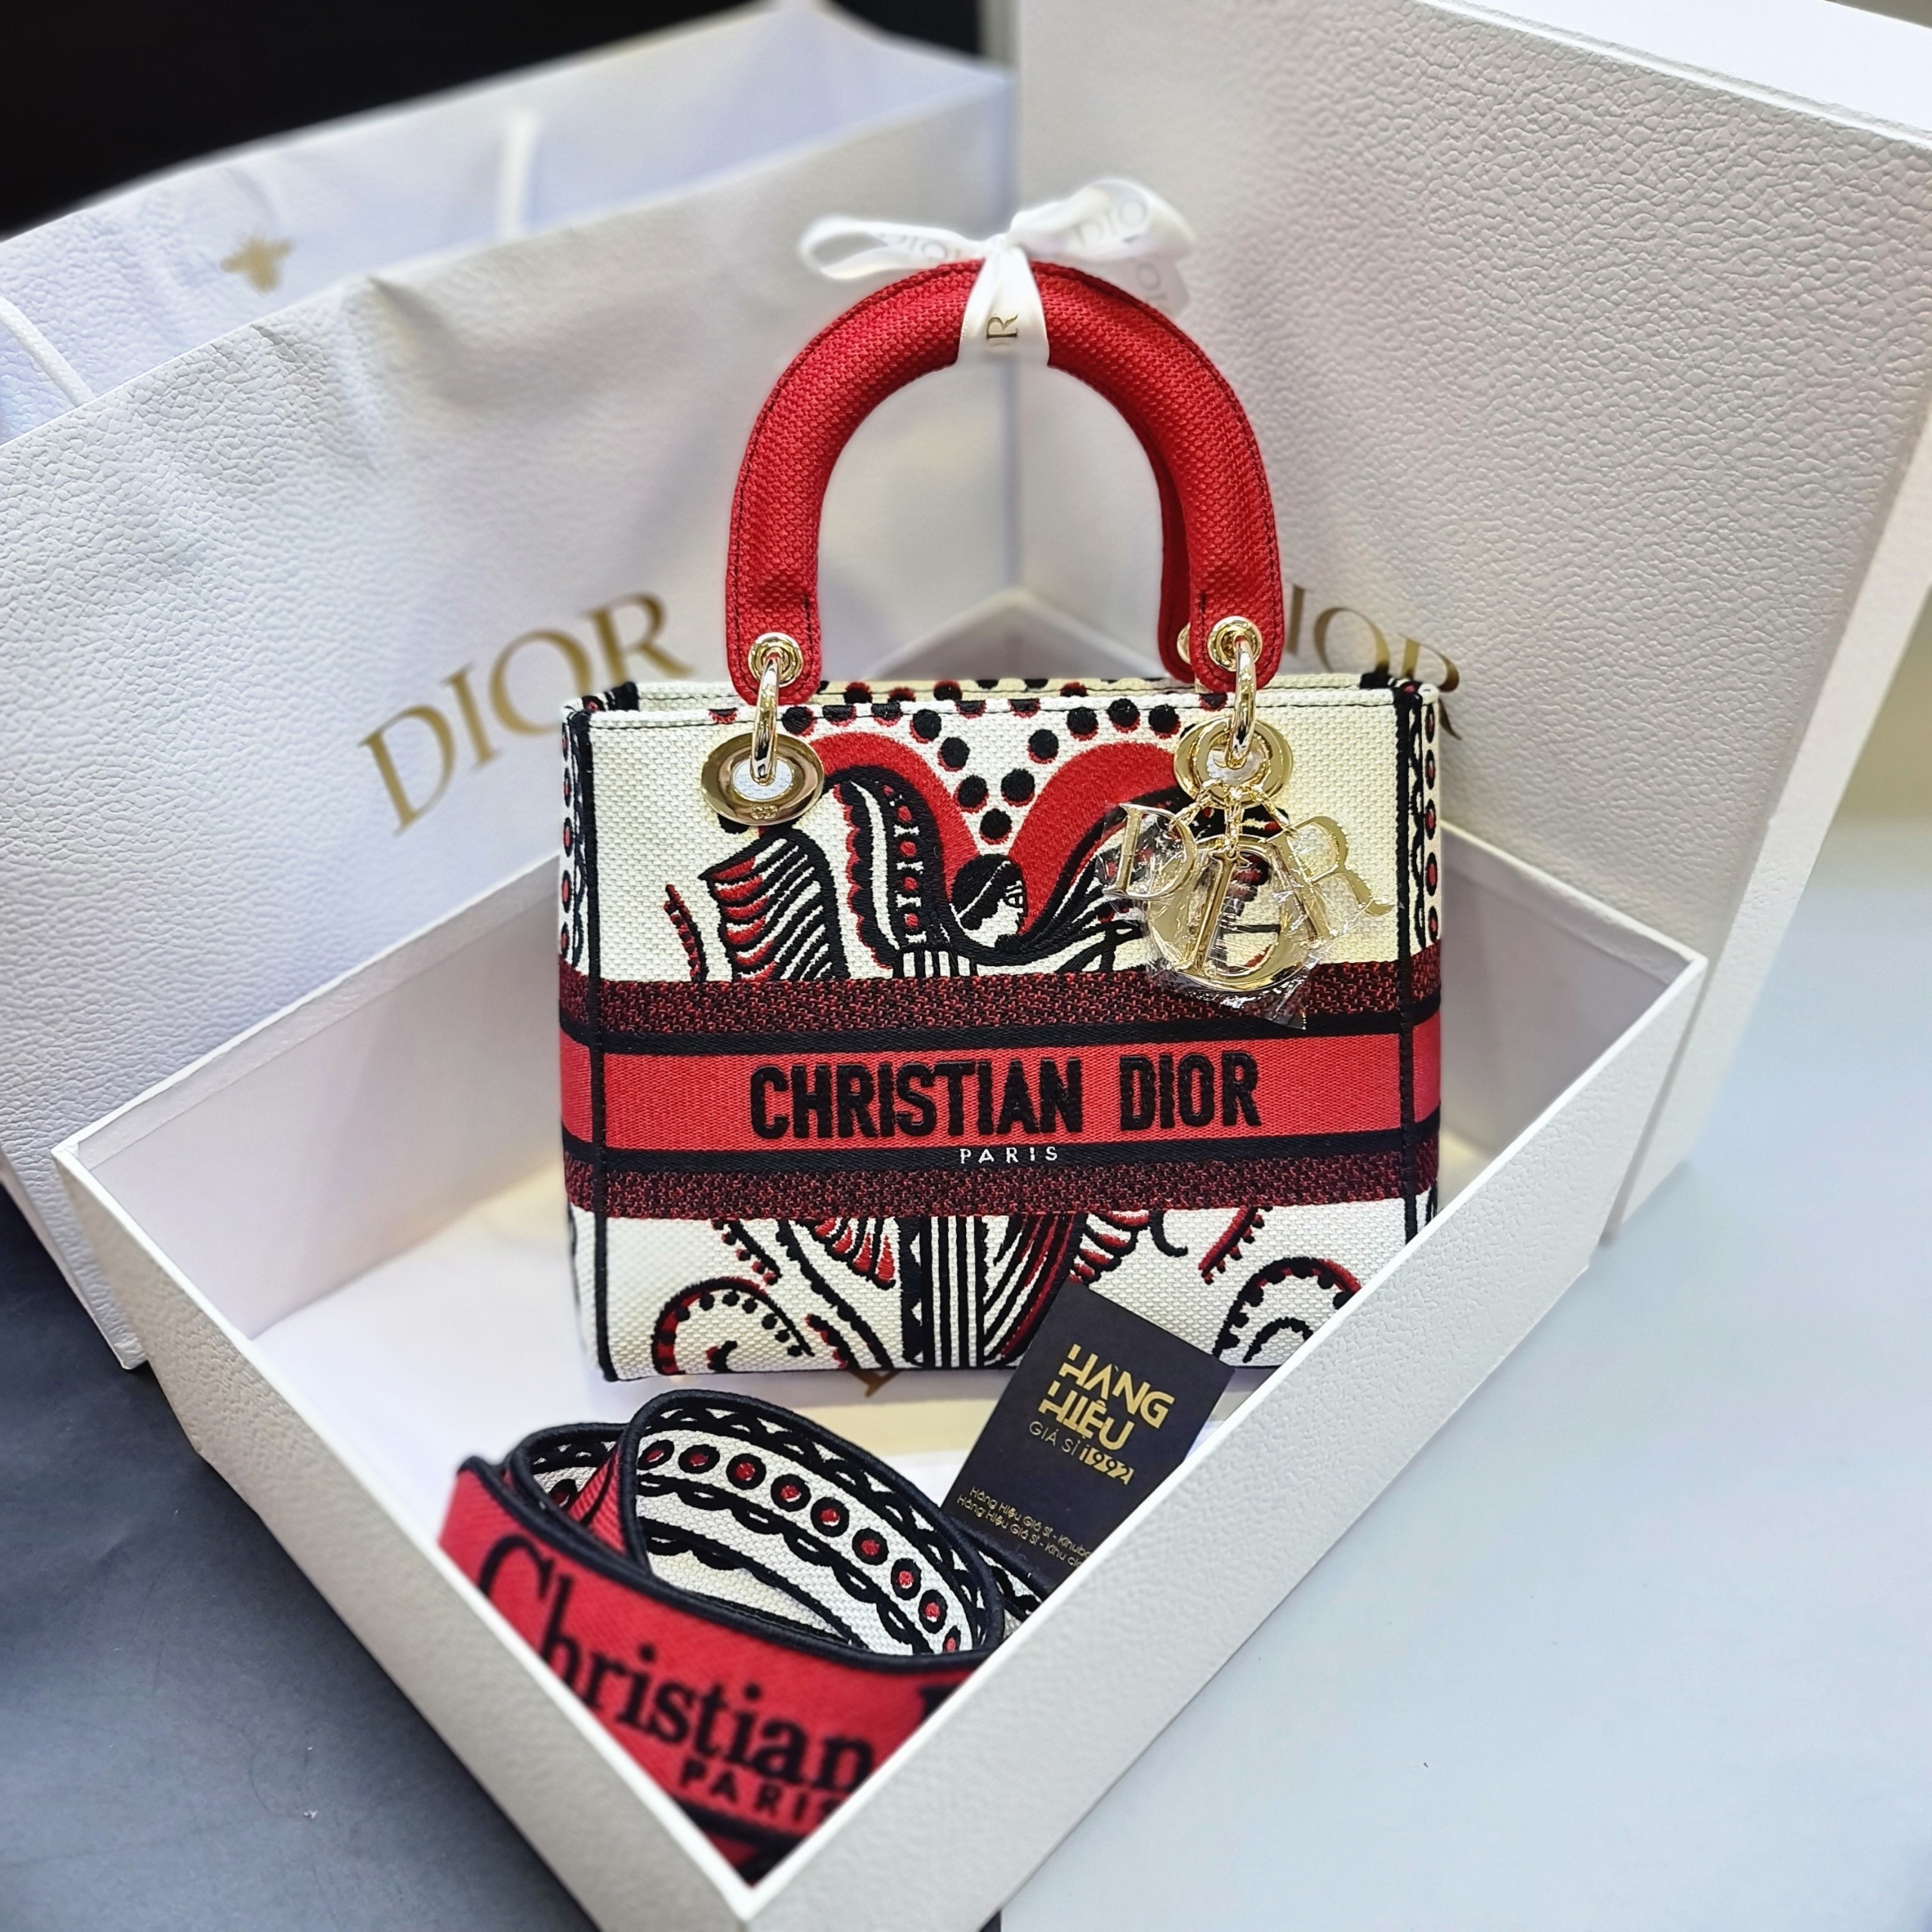 Túi Dior Lady là biểu tượng của sự tinh tế và đẳng cấp của thương hiệu thời trang Dior. Những mẫu túi được thiết kế tỉ mỉ với chất liệu cao cấp sẽ khiến bạn không thể rời mắt. Hãy chiêm ngưỡng những bức ảnh về túi Dior Lady thật chân thật để tận hưởng sự đẳng cấp và sang trọng.